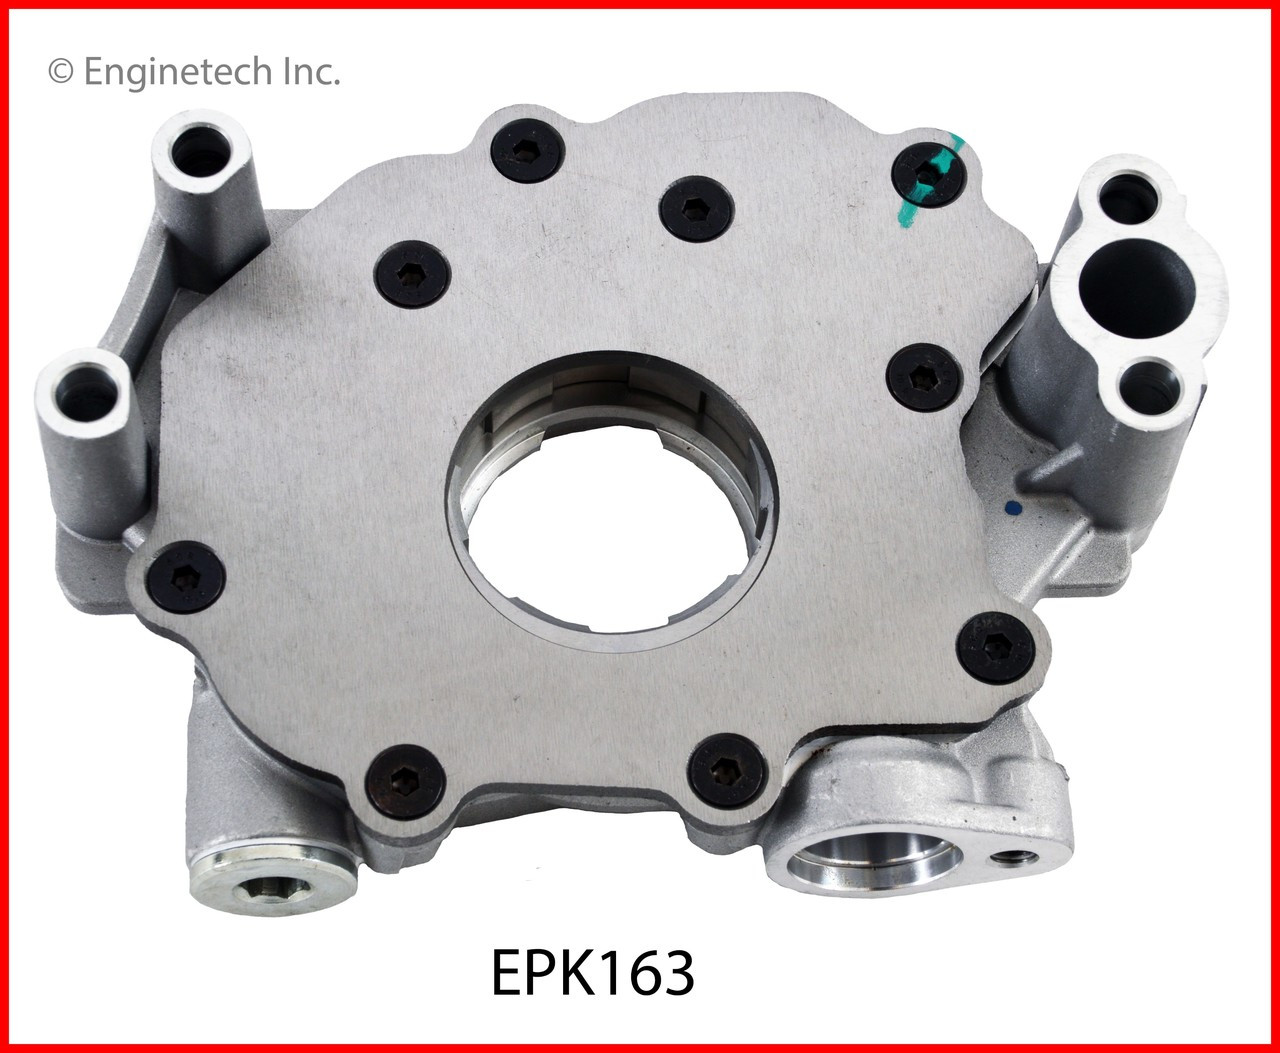 Oil Pump - 2013 Ram 1500 5.7L (EPK163.G61)